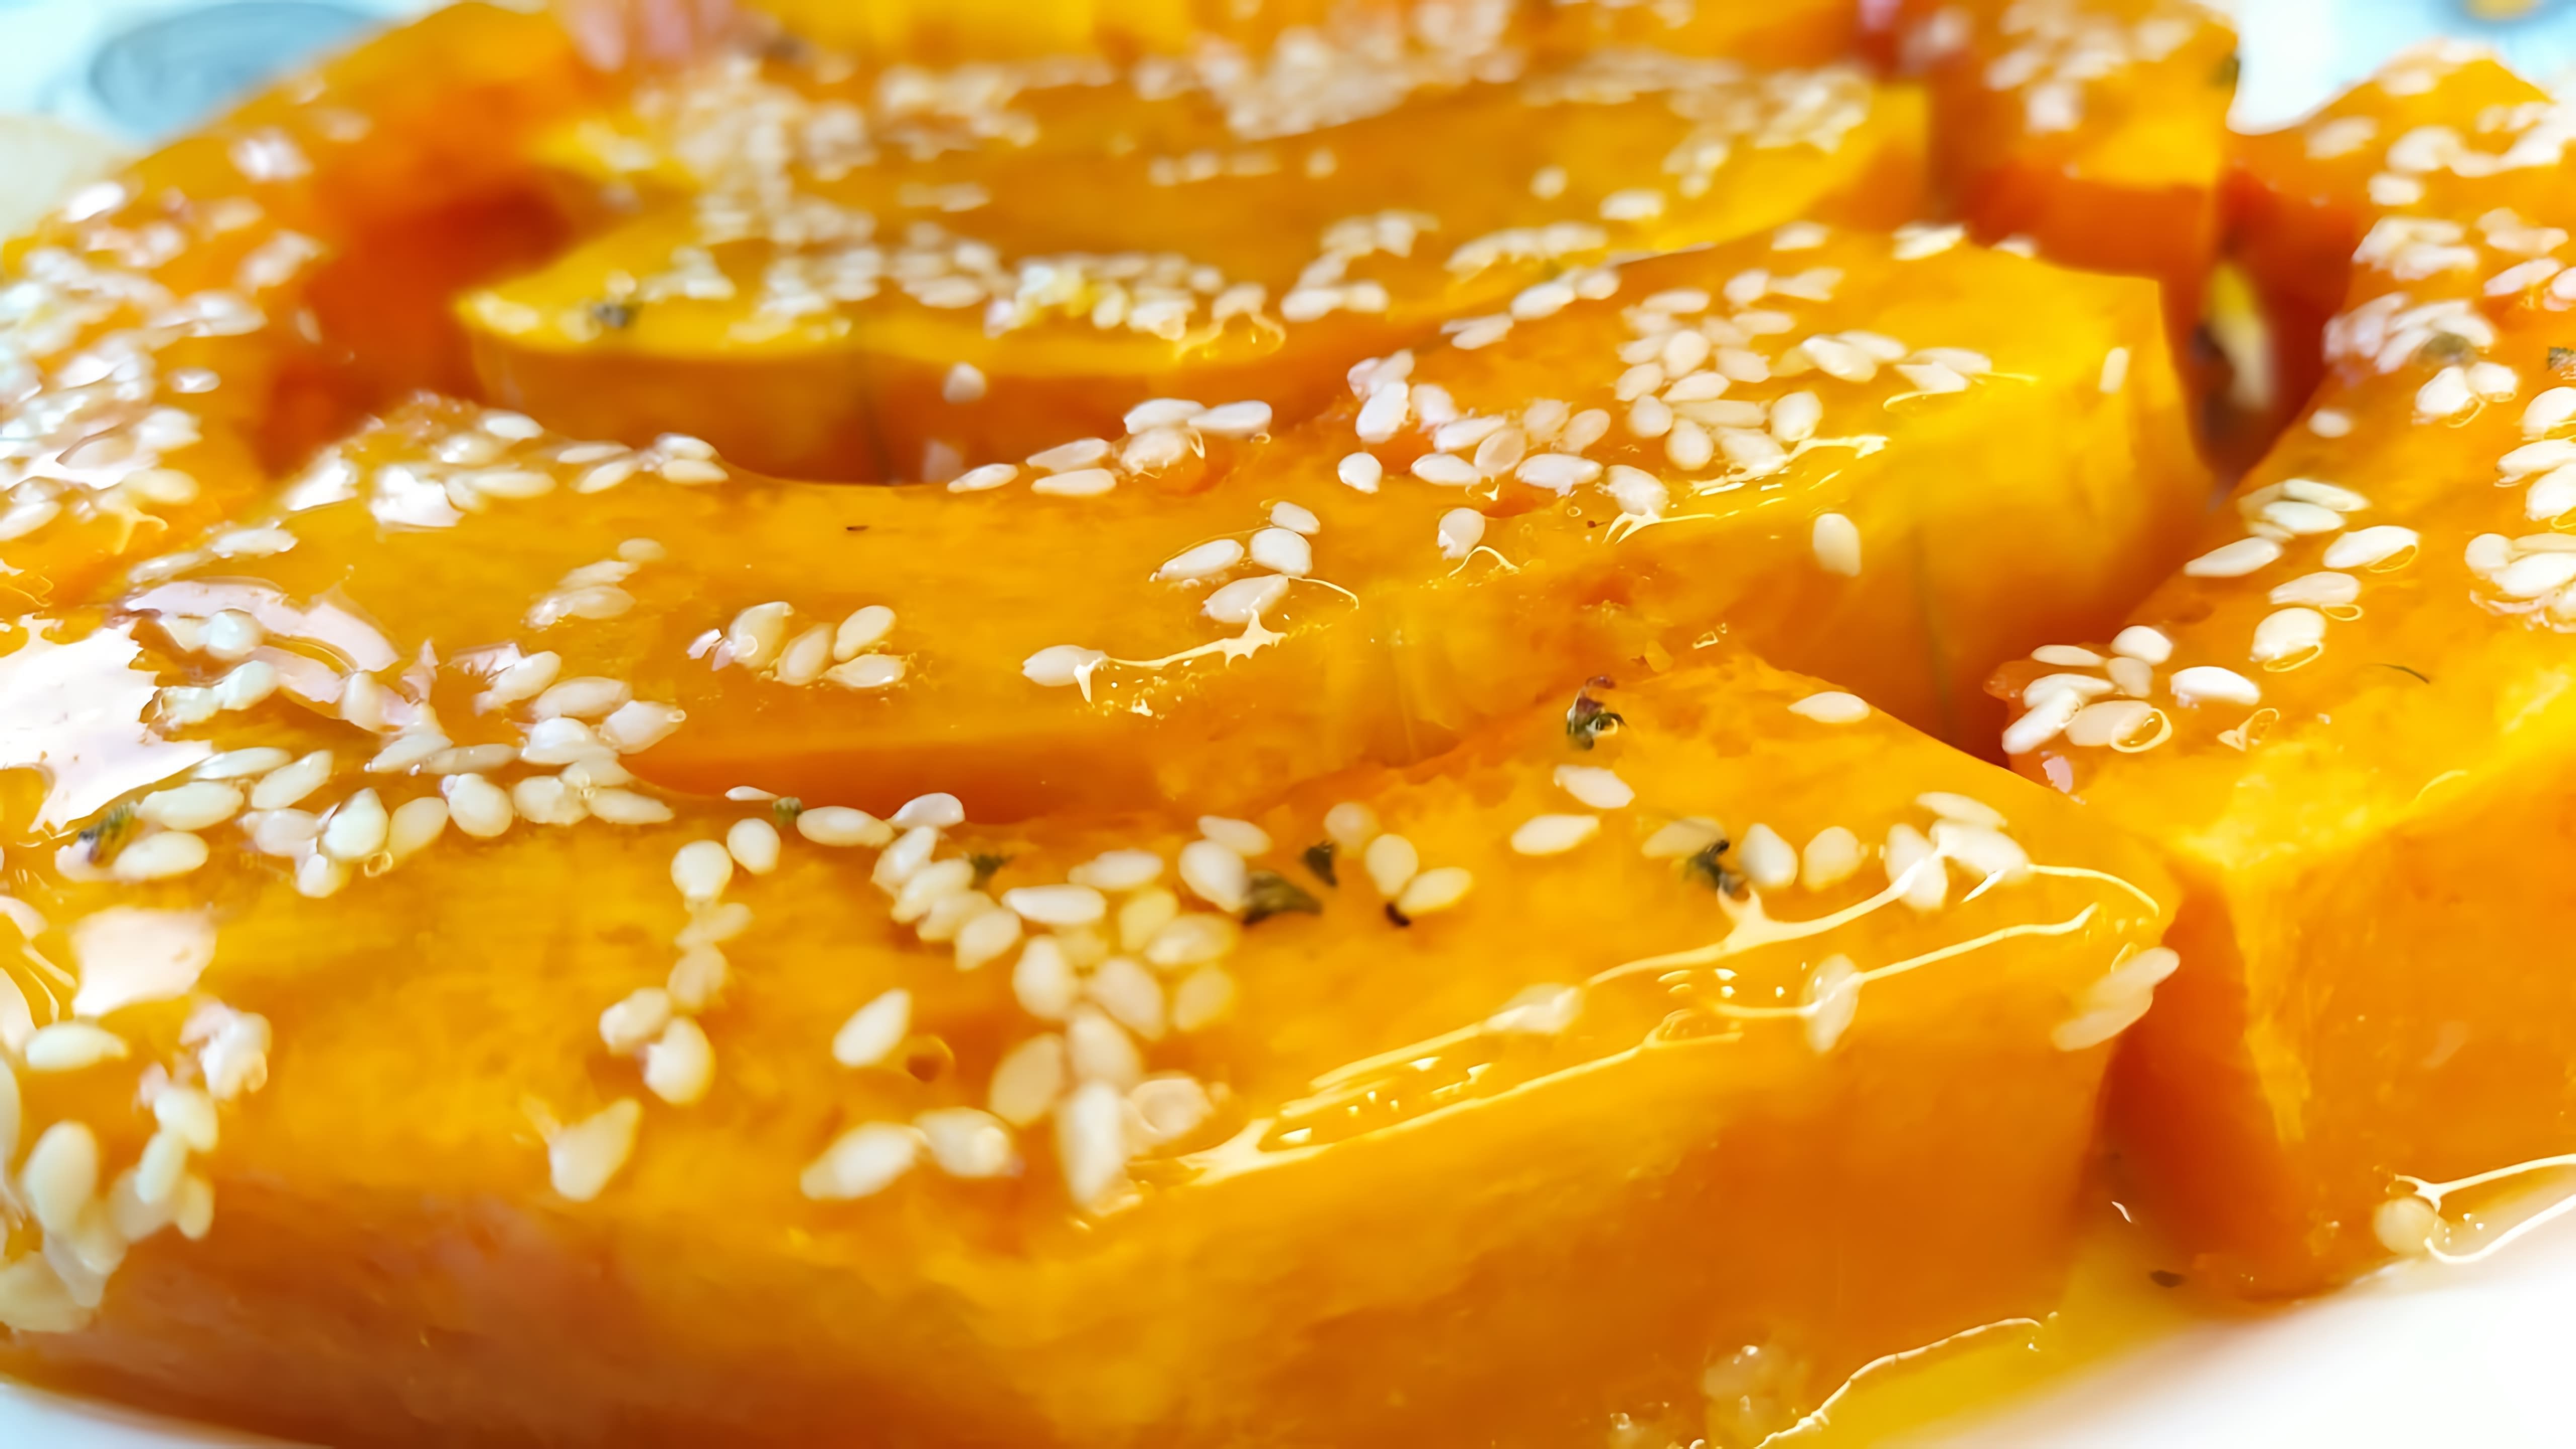 В этом видео демонстрируется процесс приготовления тыквы, запеченной в духовке с медом и кунжутом